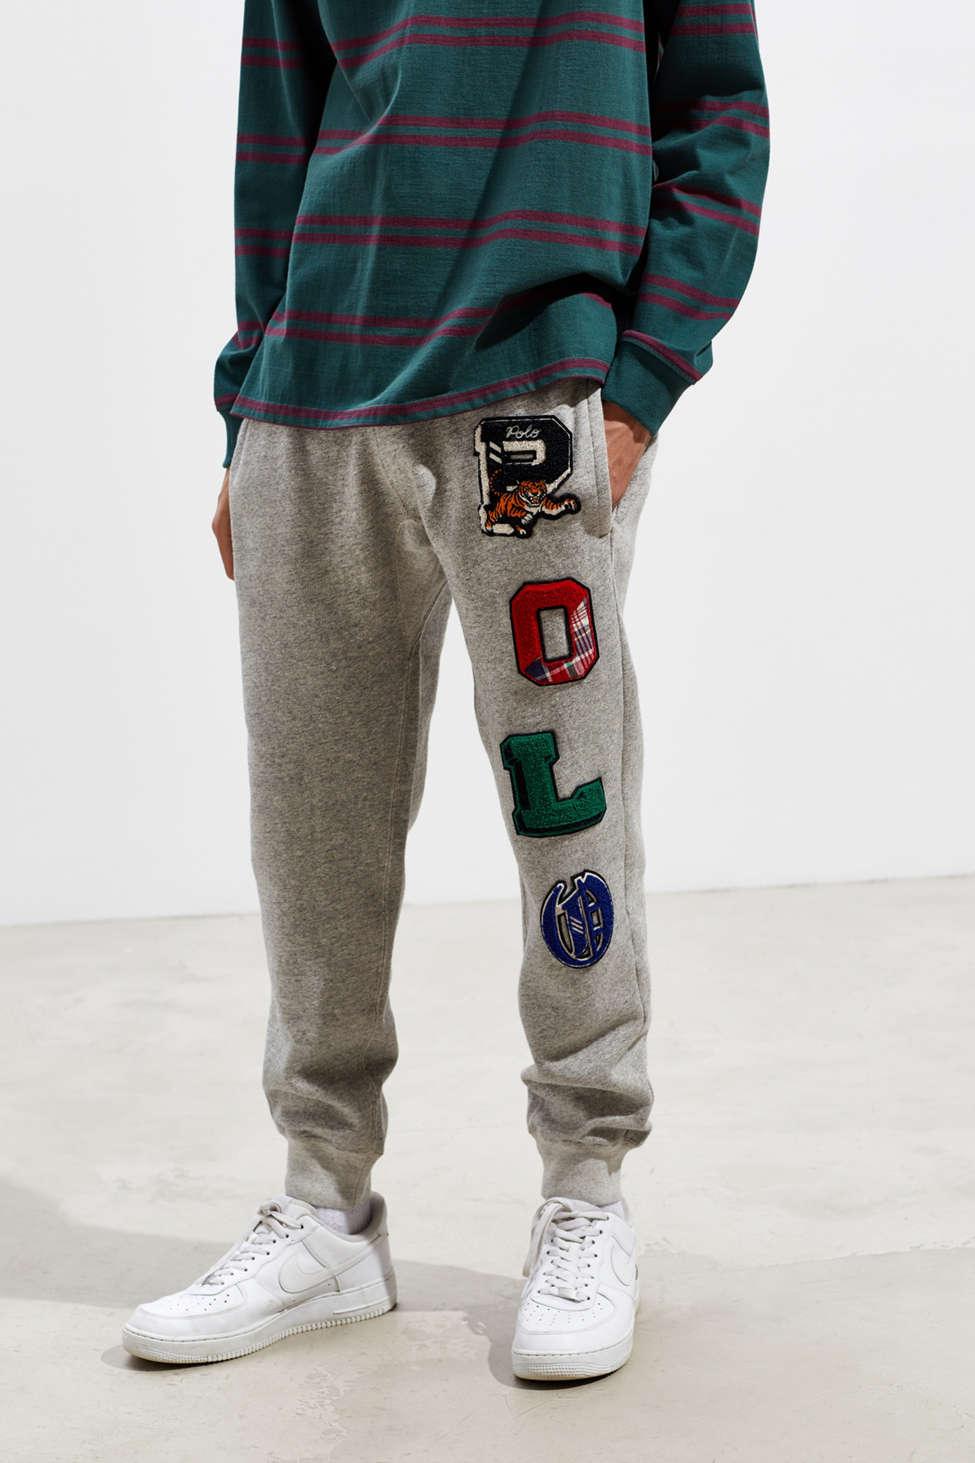 Ralph Lauren Sweatpants Outlet Styles, Save 65% | jlcatj.gob.mx